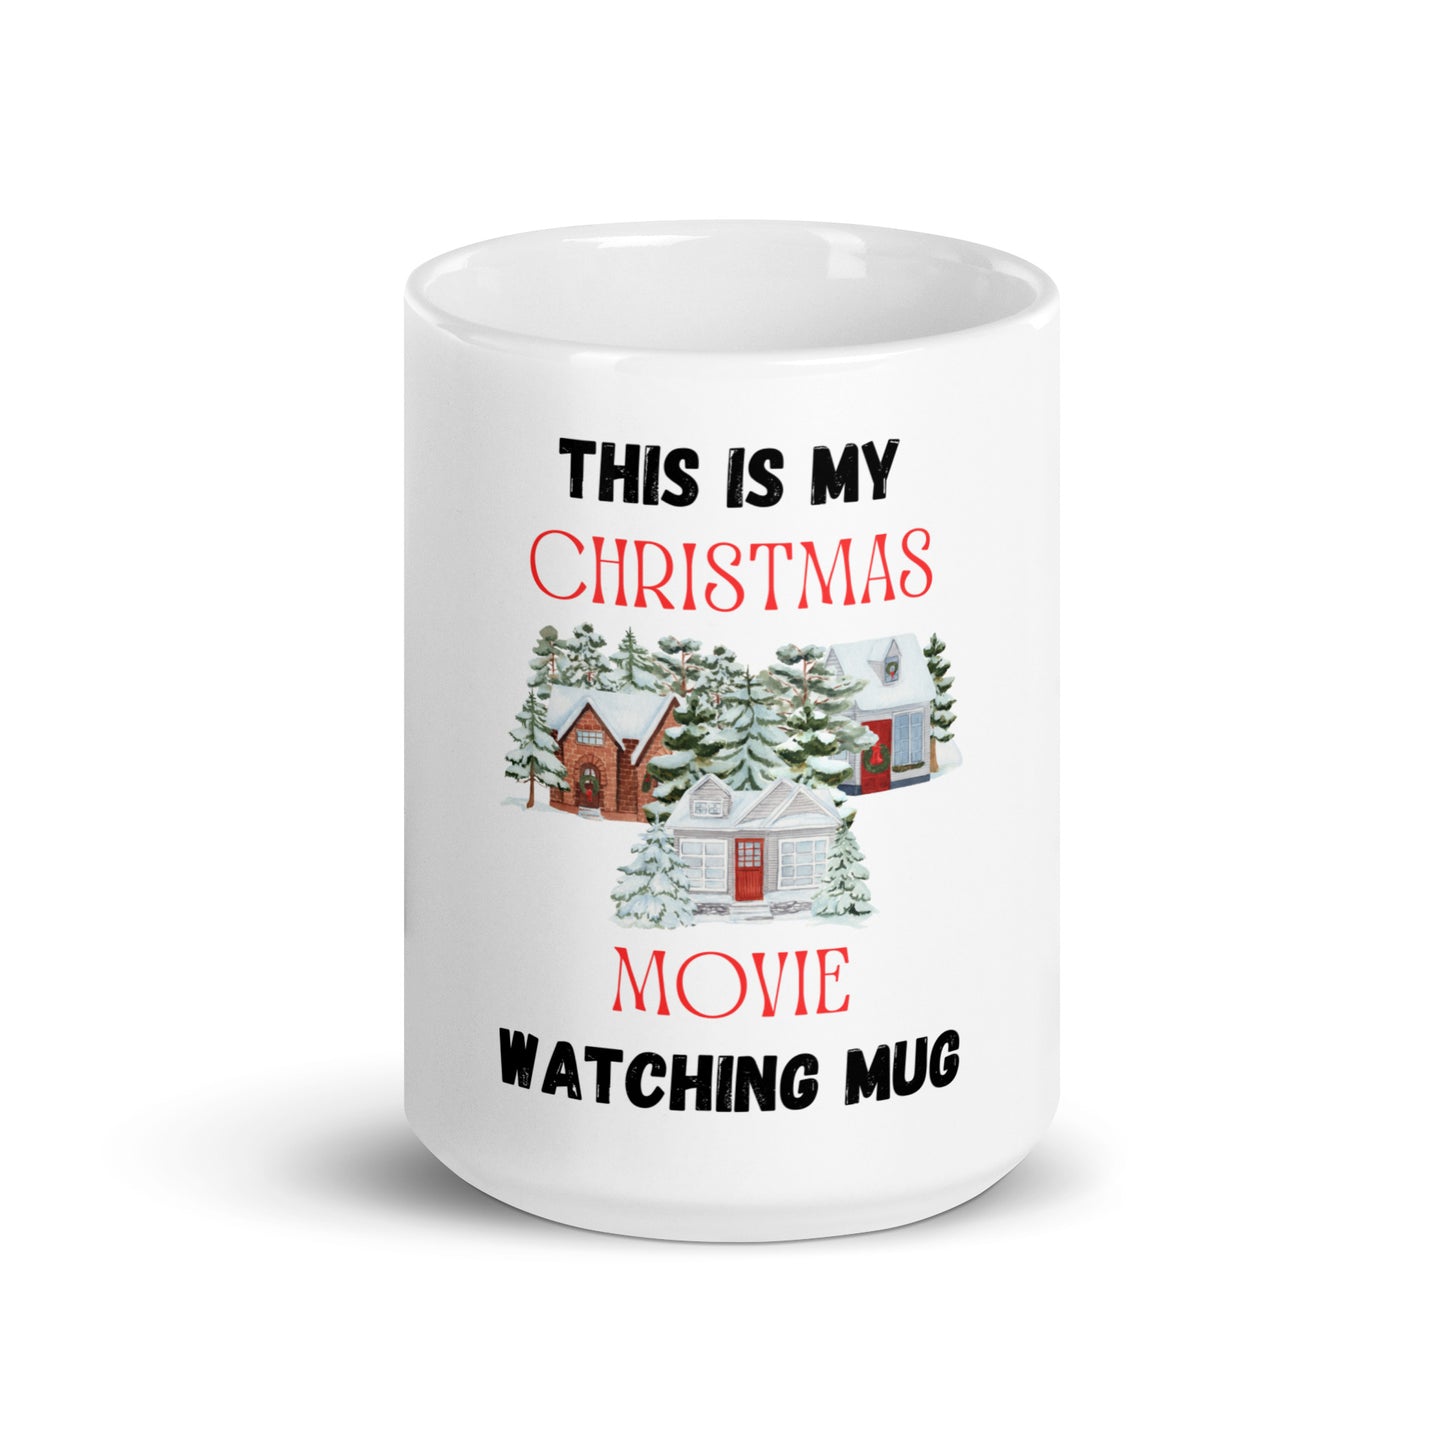 Christmas Movies at Home Mug